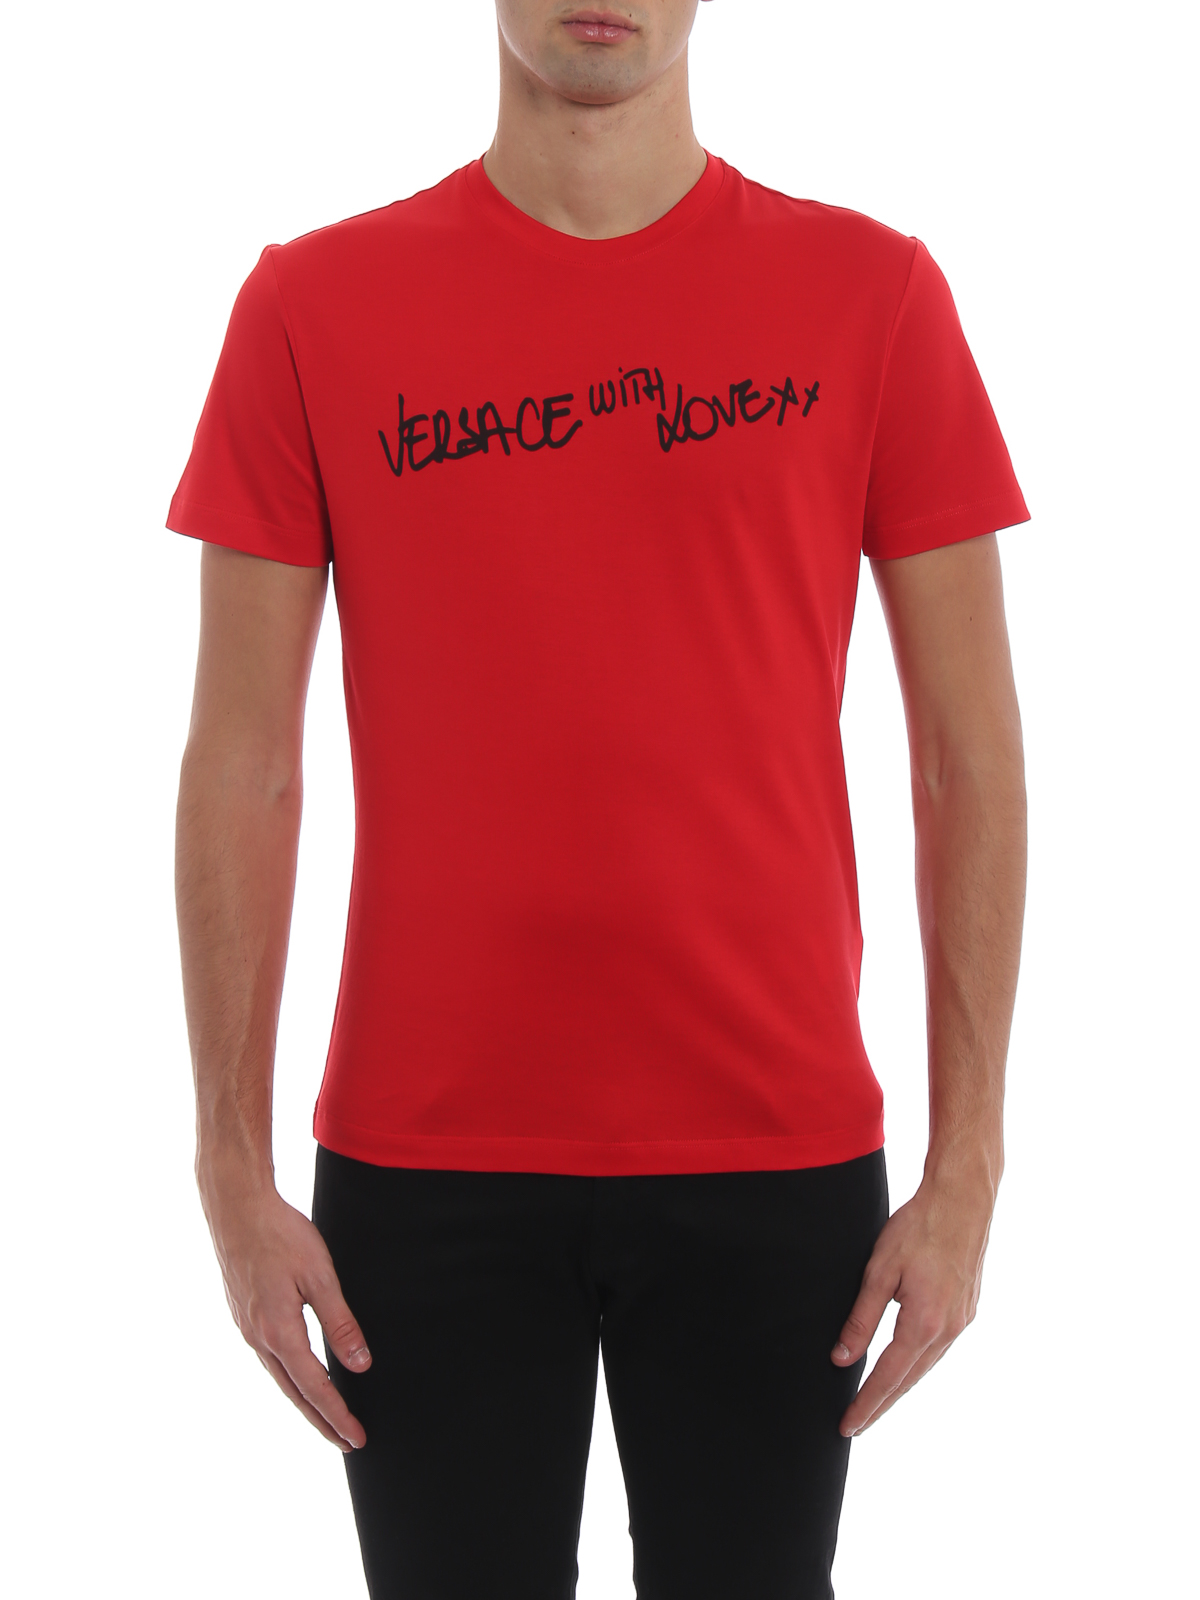 red versace t shirt